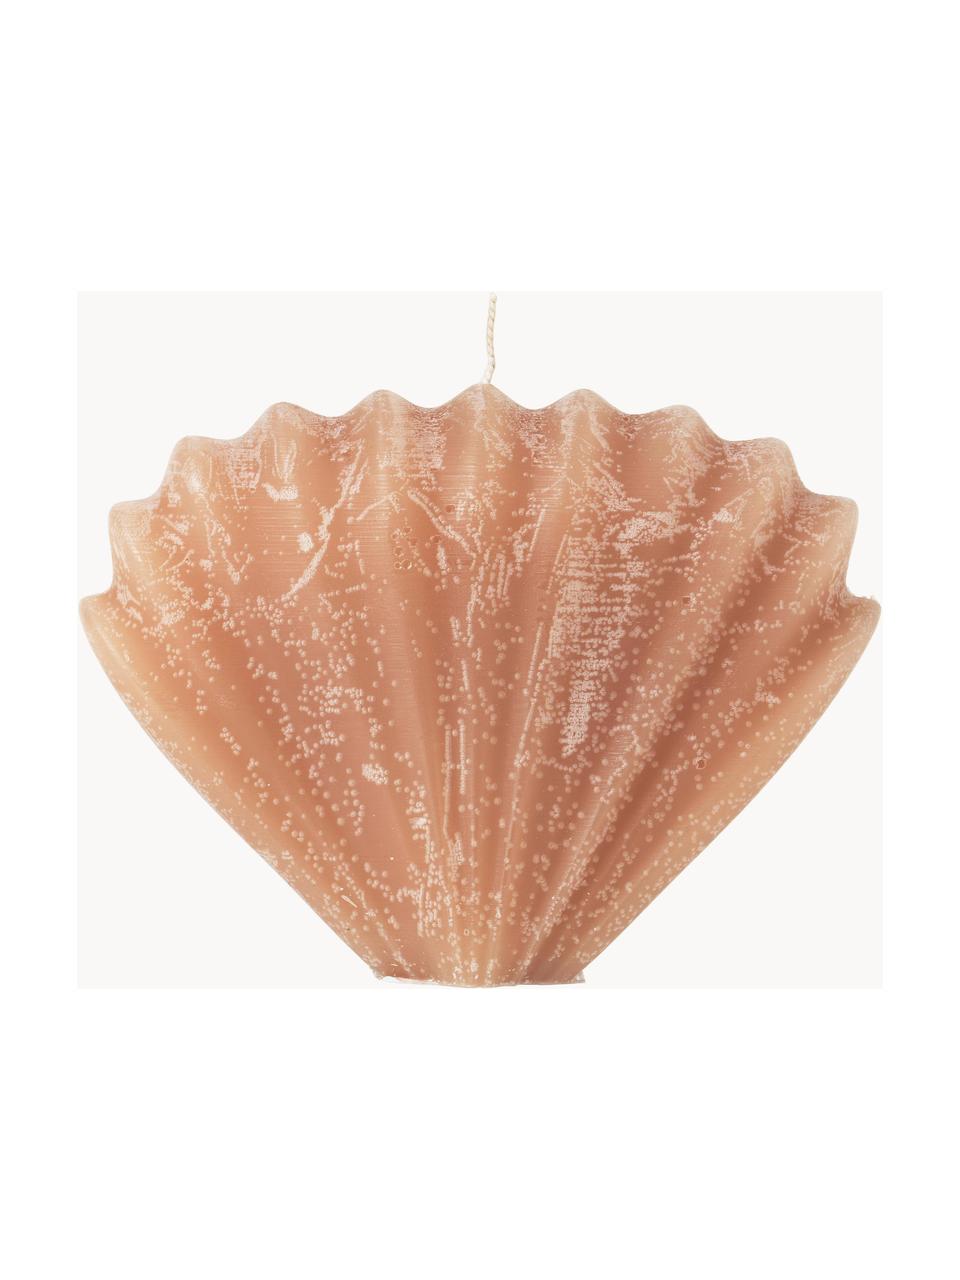 Ręcznie wykonana świeca Seashell, Parafina, Pomarańczowy, S 15 x W 10 cm